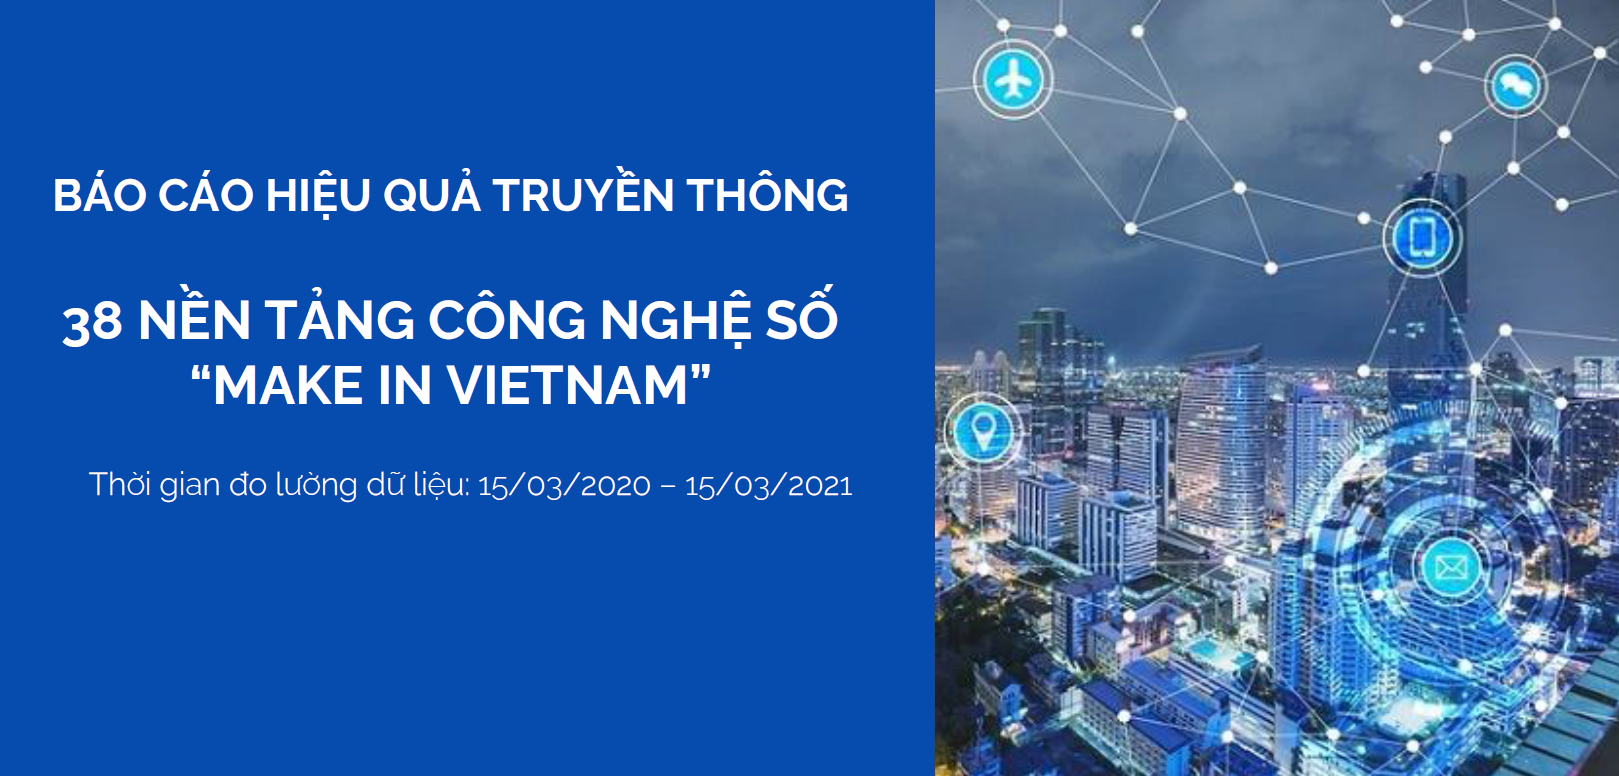 Hiệu Quả Truyền Thông 38 Nền Tảng Công Nghệ Số Việt Nam trong 2020